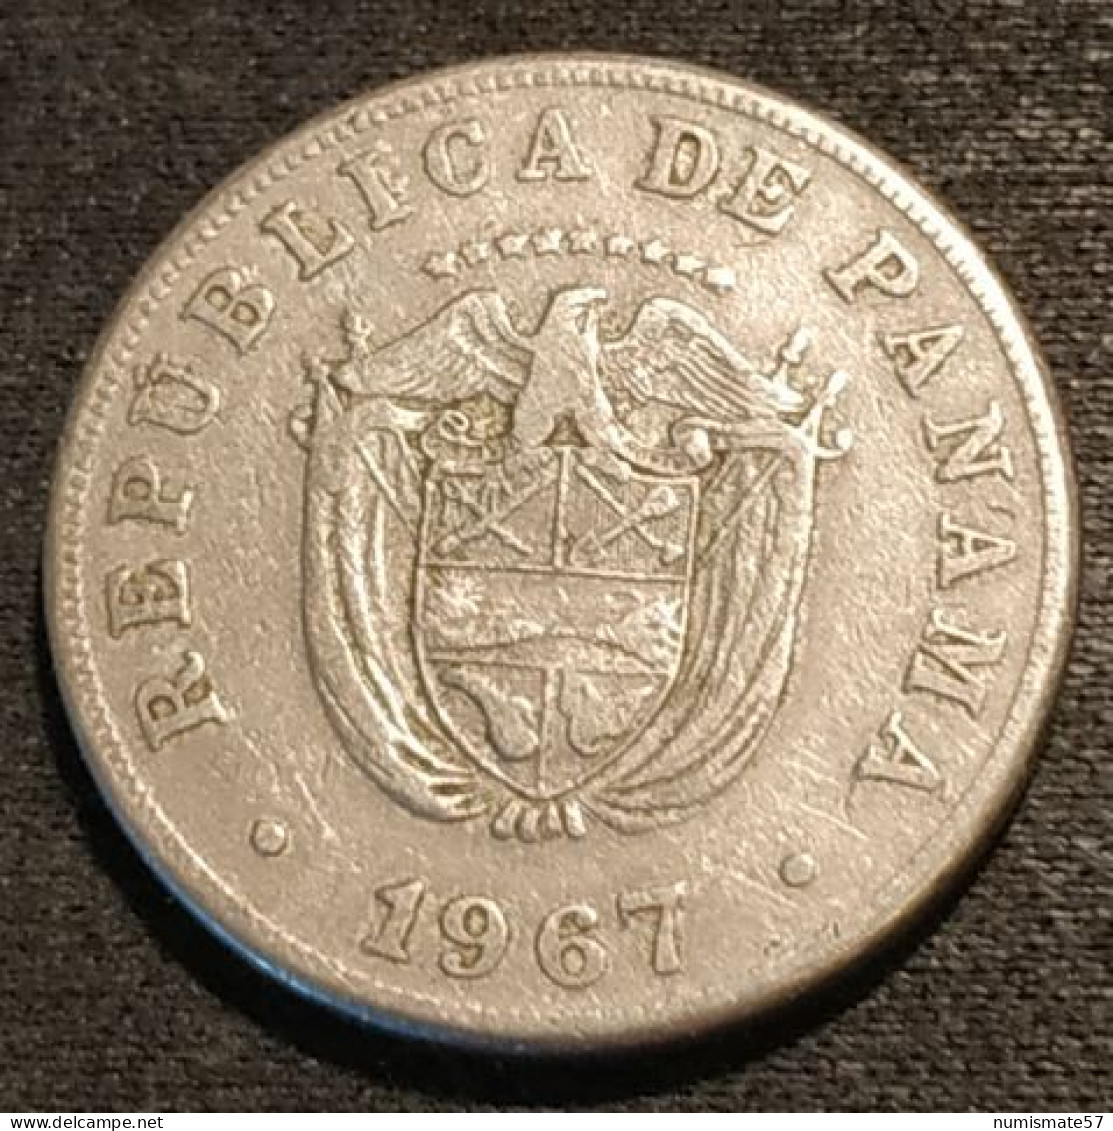 PANAMA - 5 CENTESIMOS 1967 - KM 23.2 - Panamá